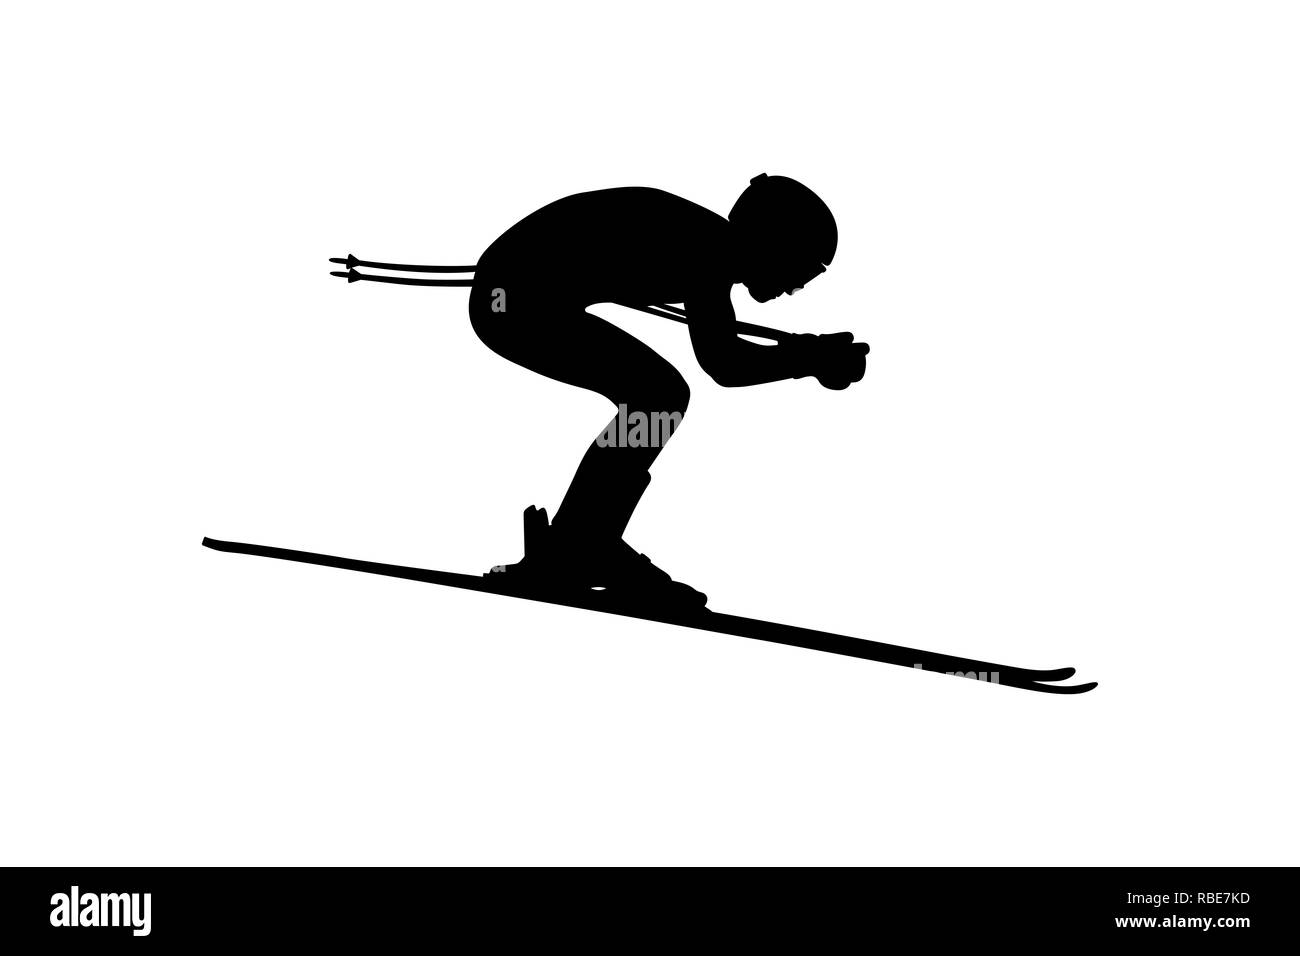 Ski alpin hommes côté descente voir silhouette noire Banque D'Images